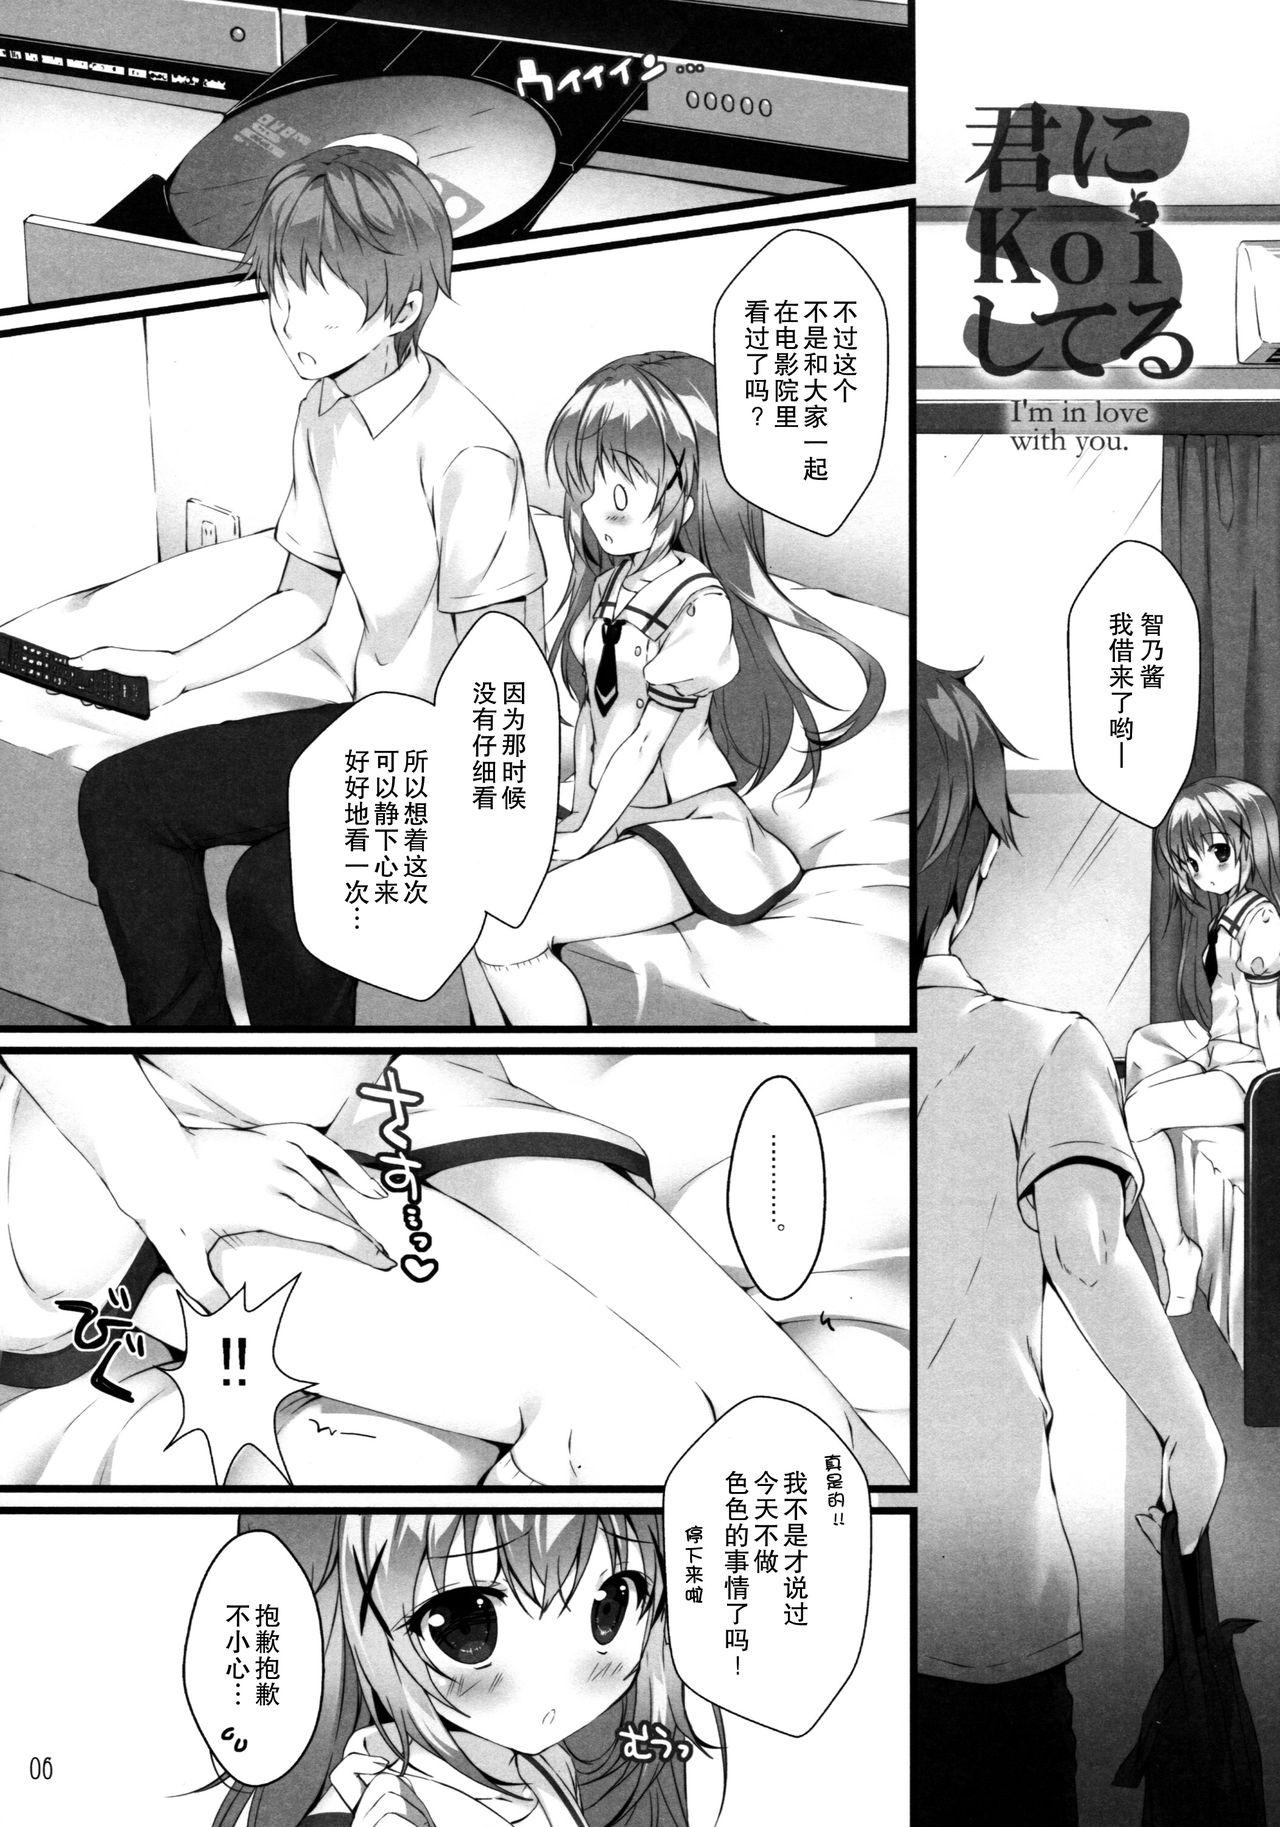 Tesao Kimi ni koi Shiteru 5 - Gochuumon wa usagi desu ka Girlnextdoor - Page 6